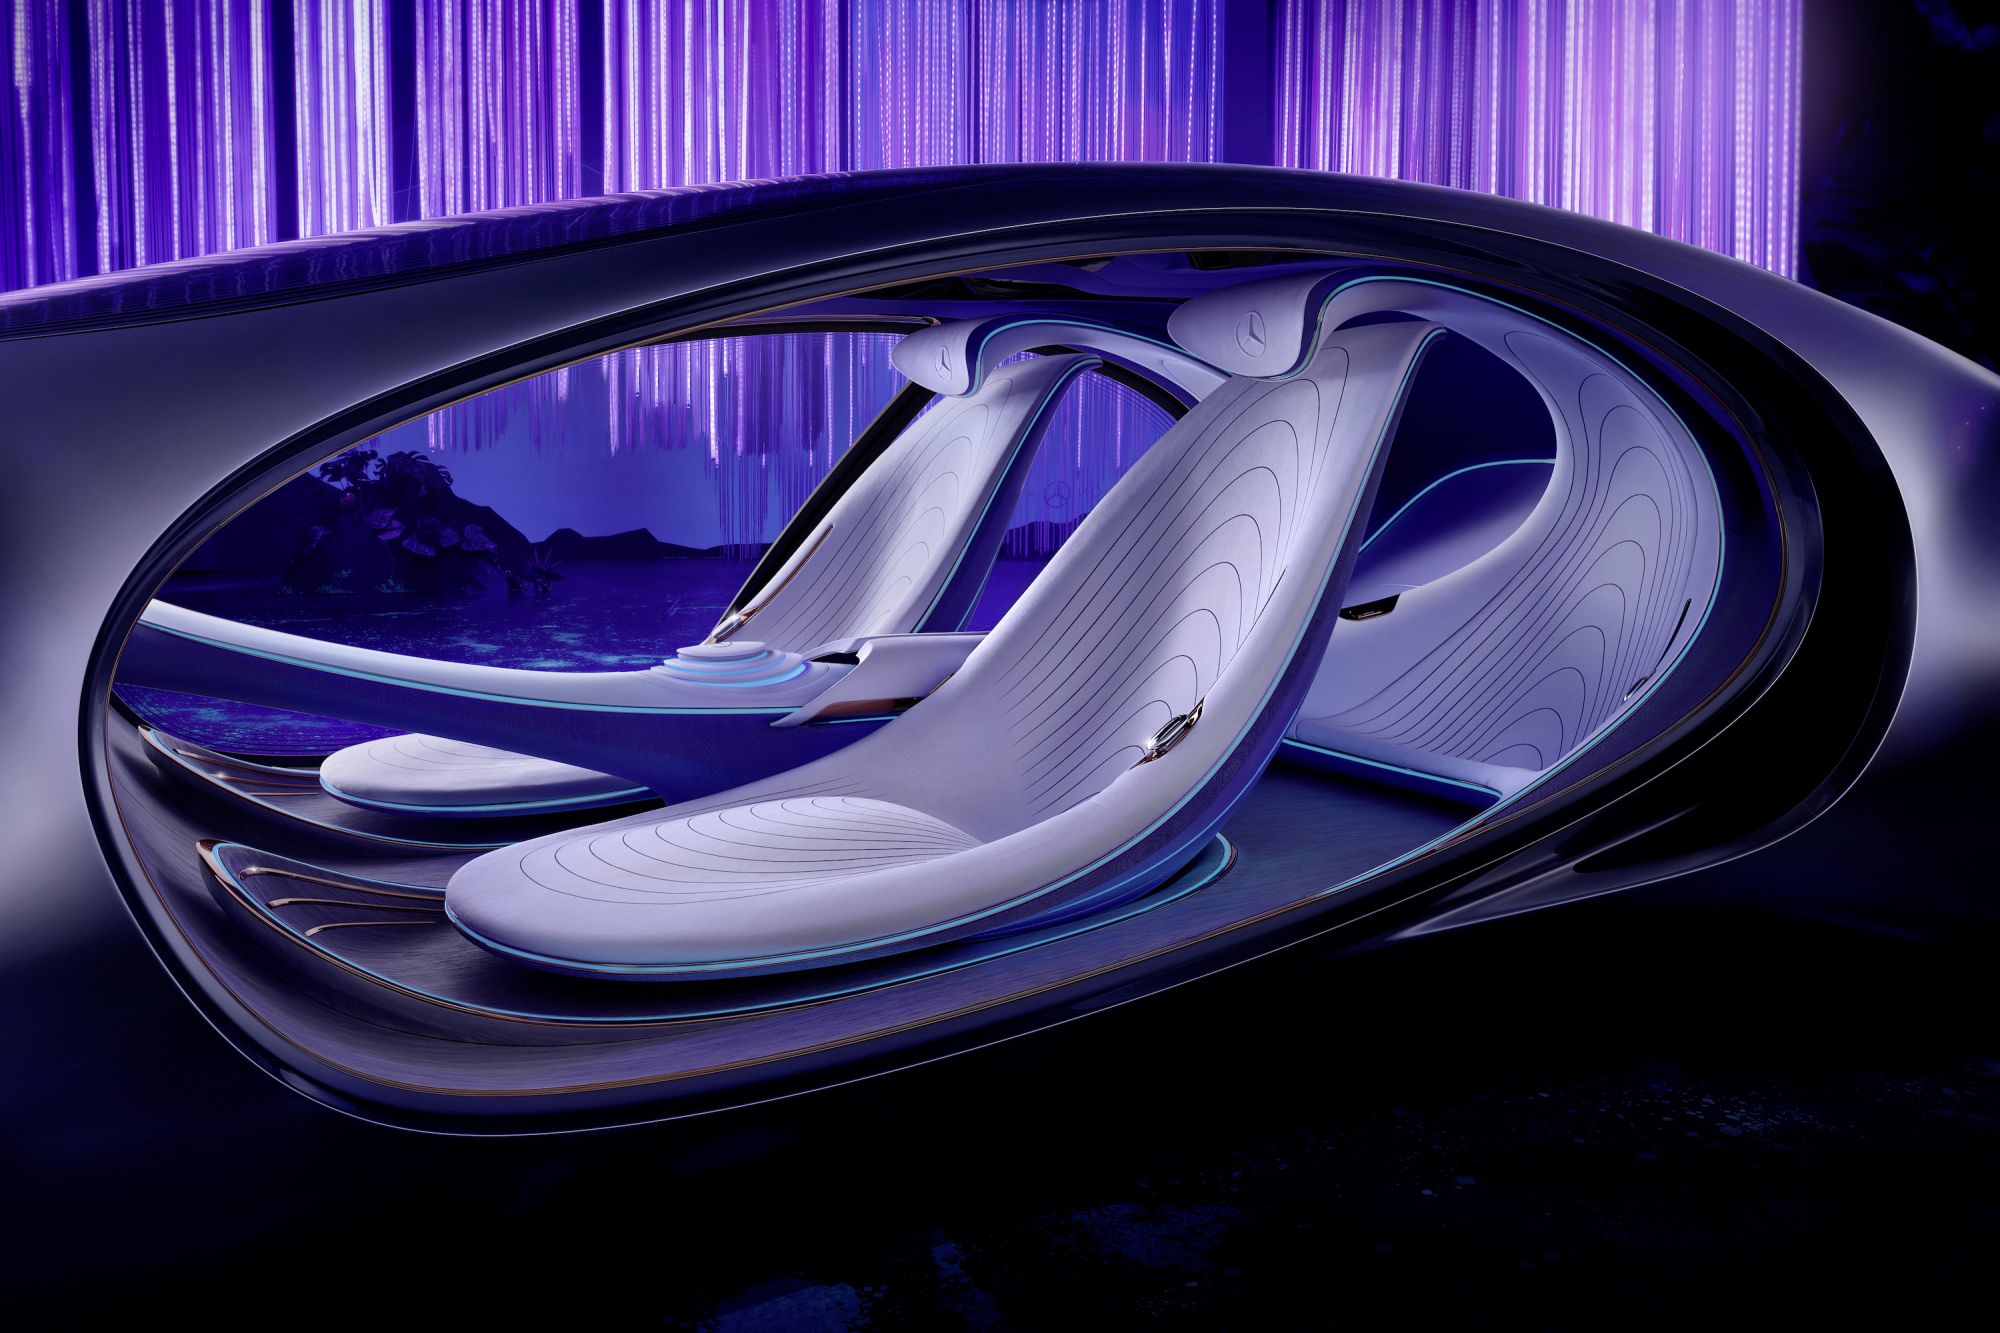 MercedesBenz Vision AVTR  bản concept dựa trên phim bom tấn Avatar   CarPassionvn  Cộng Đồng Xe  Đam mê